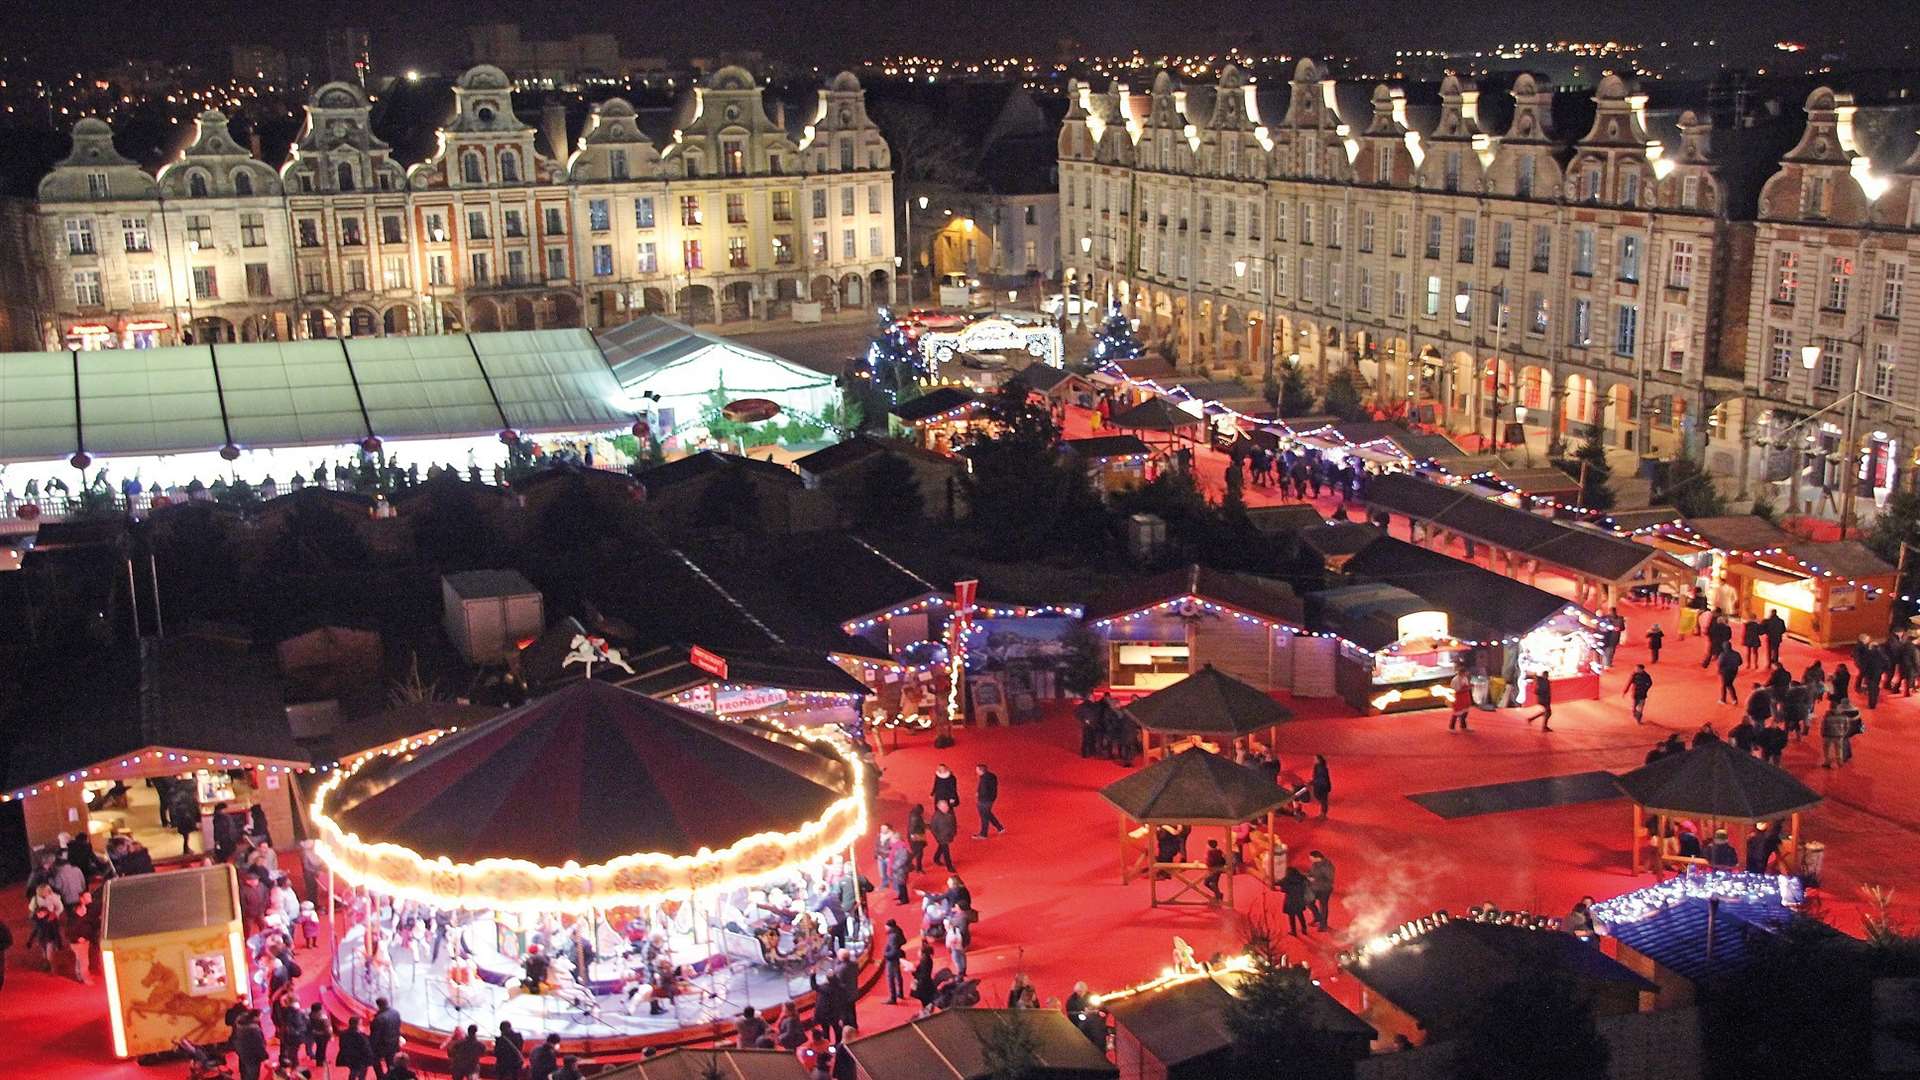 Arras Christmas market